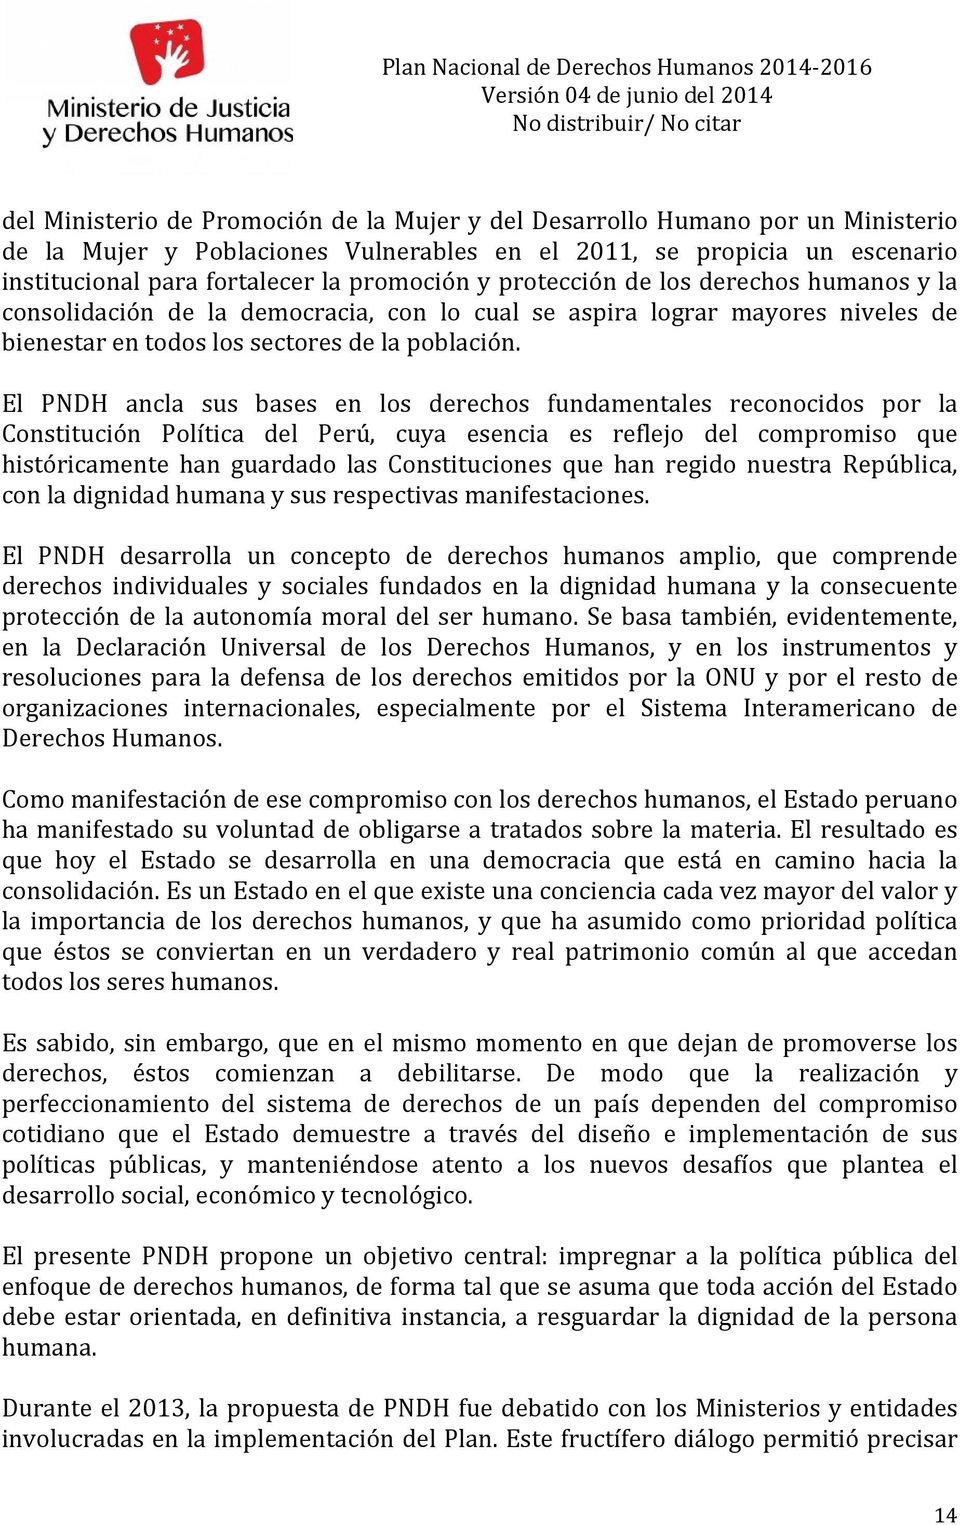 El PNDH ancla sus bases en los derechos fundamentales reconocidos por la Constitución Política del Perú, cuya esencia es reflejo del compromiso que históricamente han guardado las Constituciones que